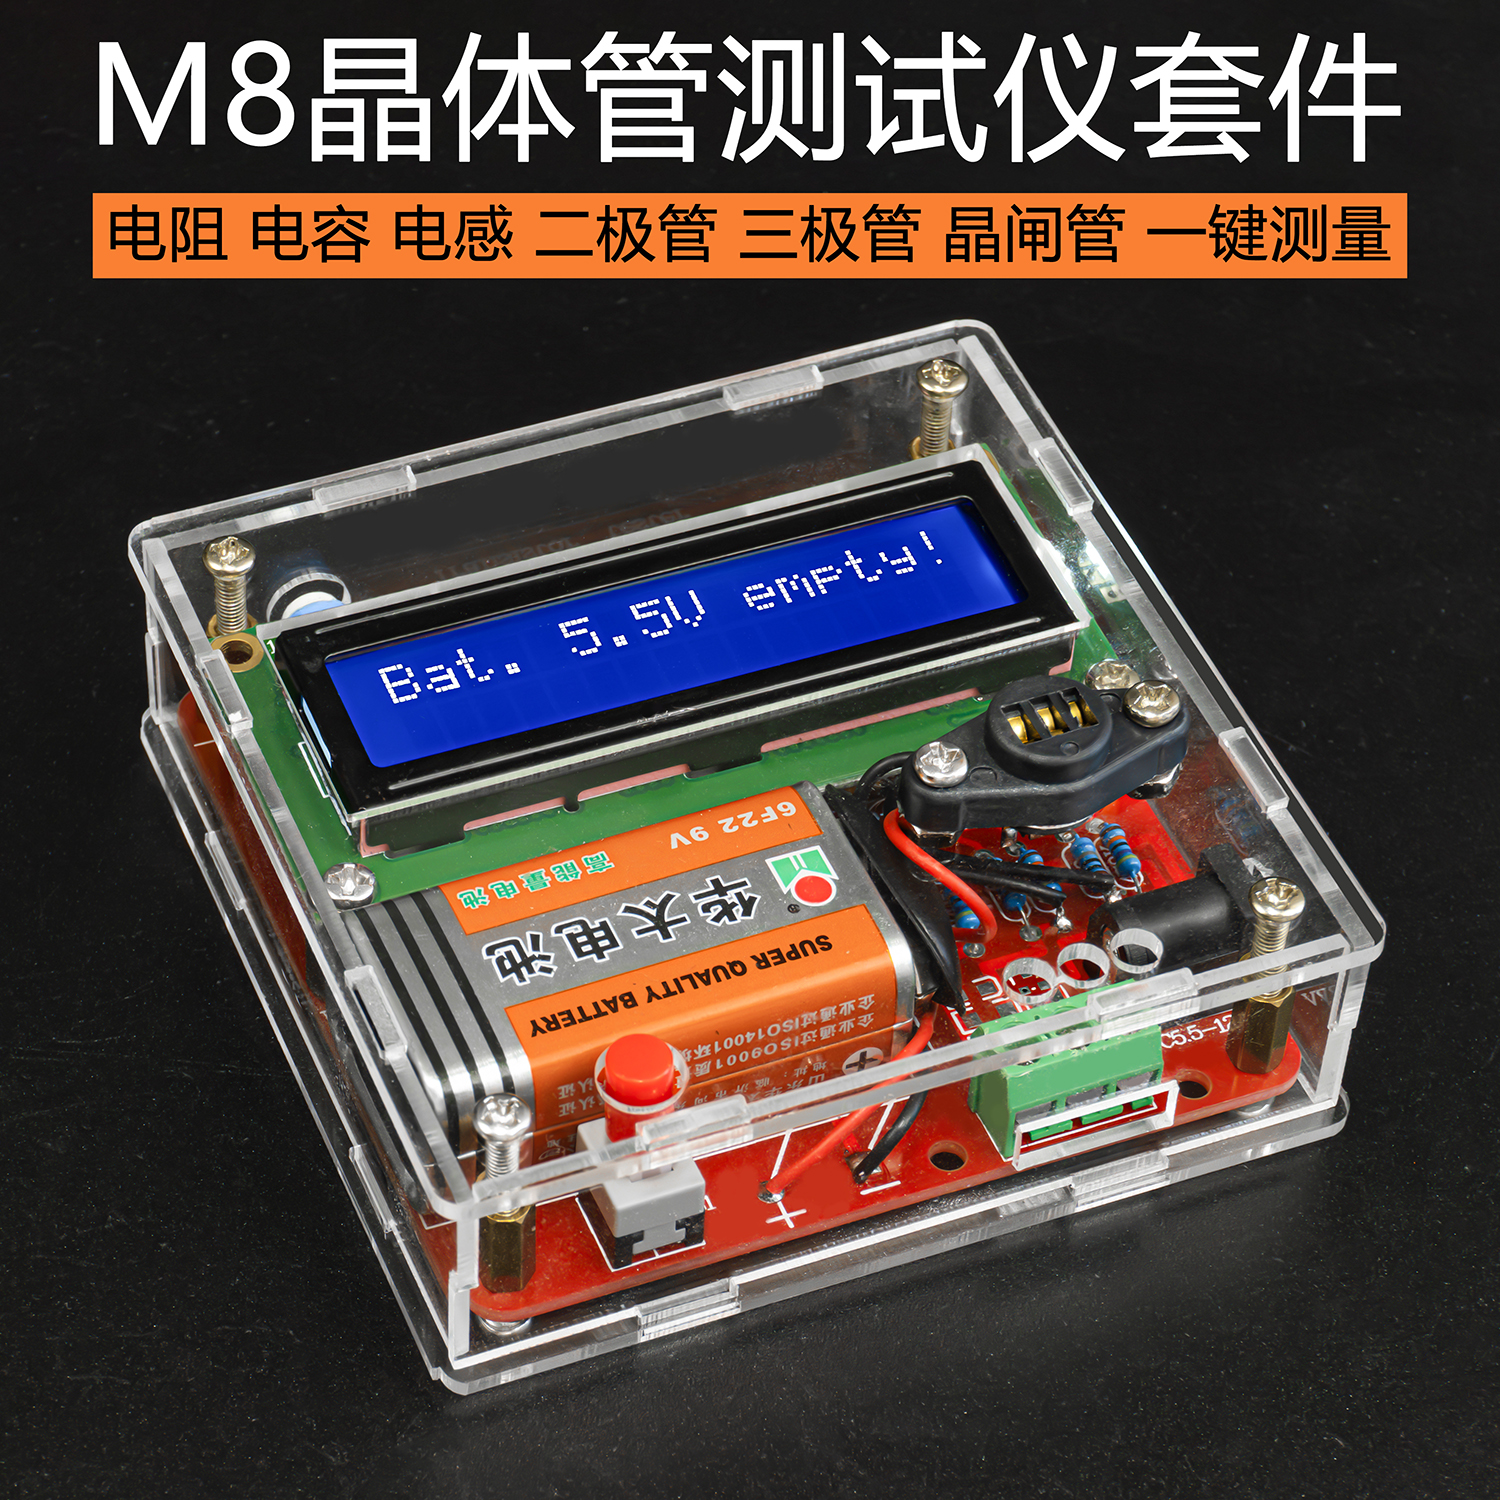 M8晶体管测试仪多用表测电阻电容三极管电感ESR表DIY焊接组装套件